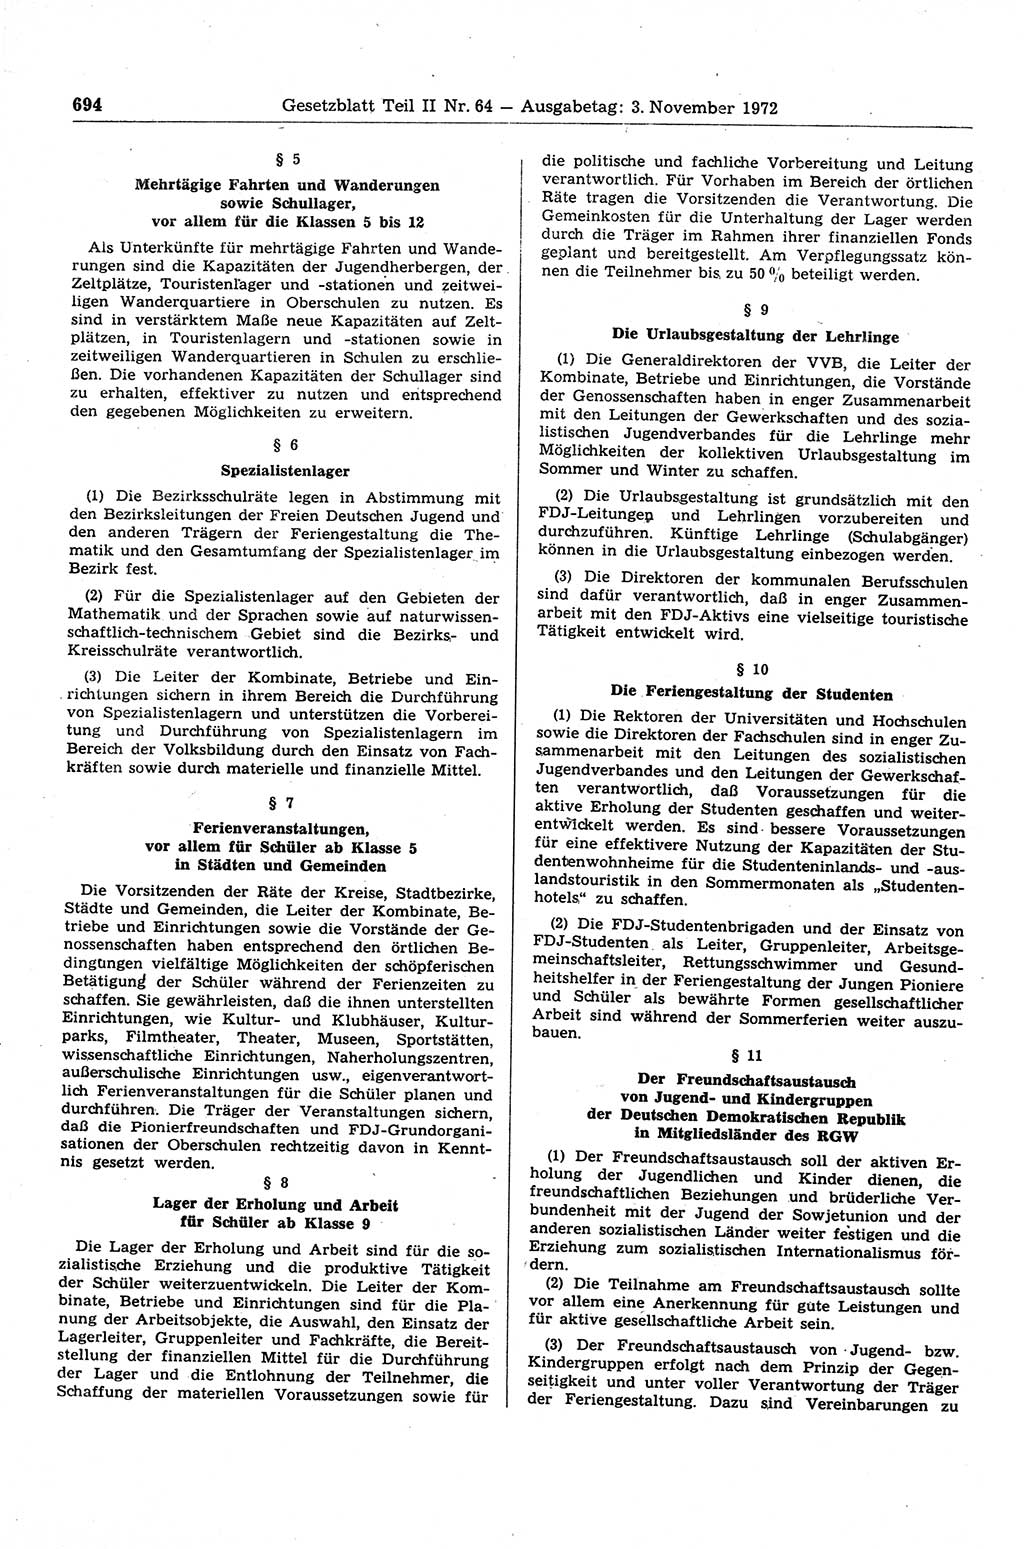 Gesetzblatt (GBl.) der Deutschen Demokratischen Republik (DDR) Teil ⅠⅠ 1972, Seite 694 (GBl. DDR ⅠⅠ 1972, S. 694)